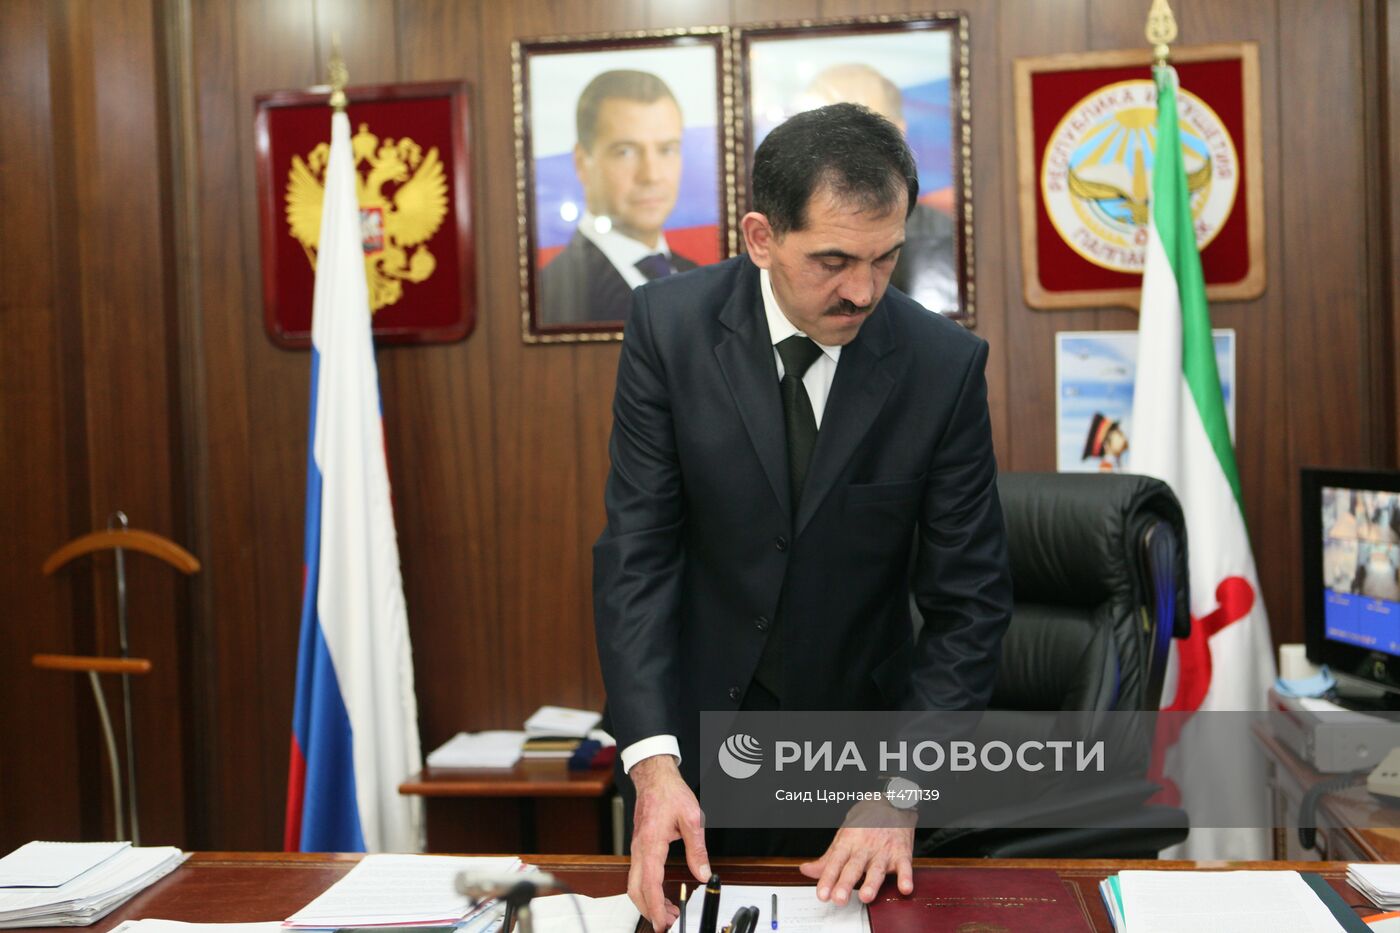 Интервью президента Ингушетии агентству РИА новости